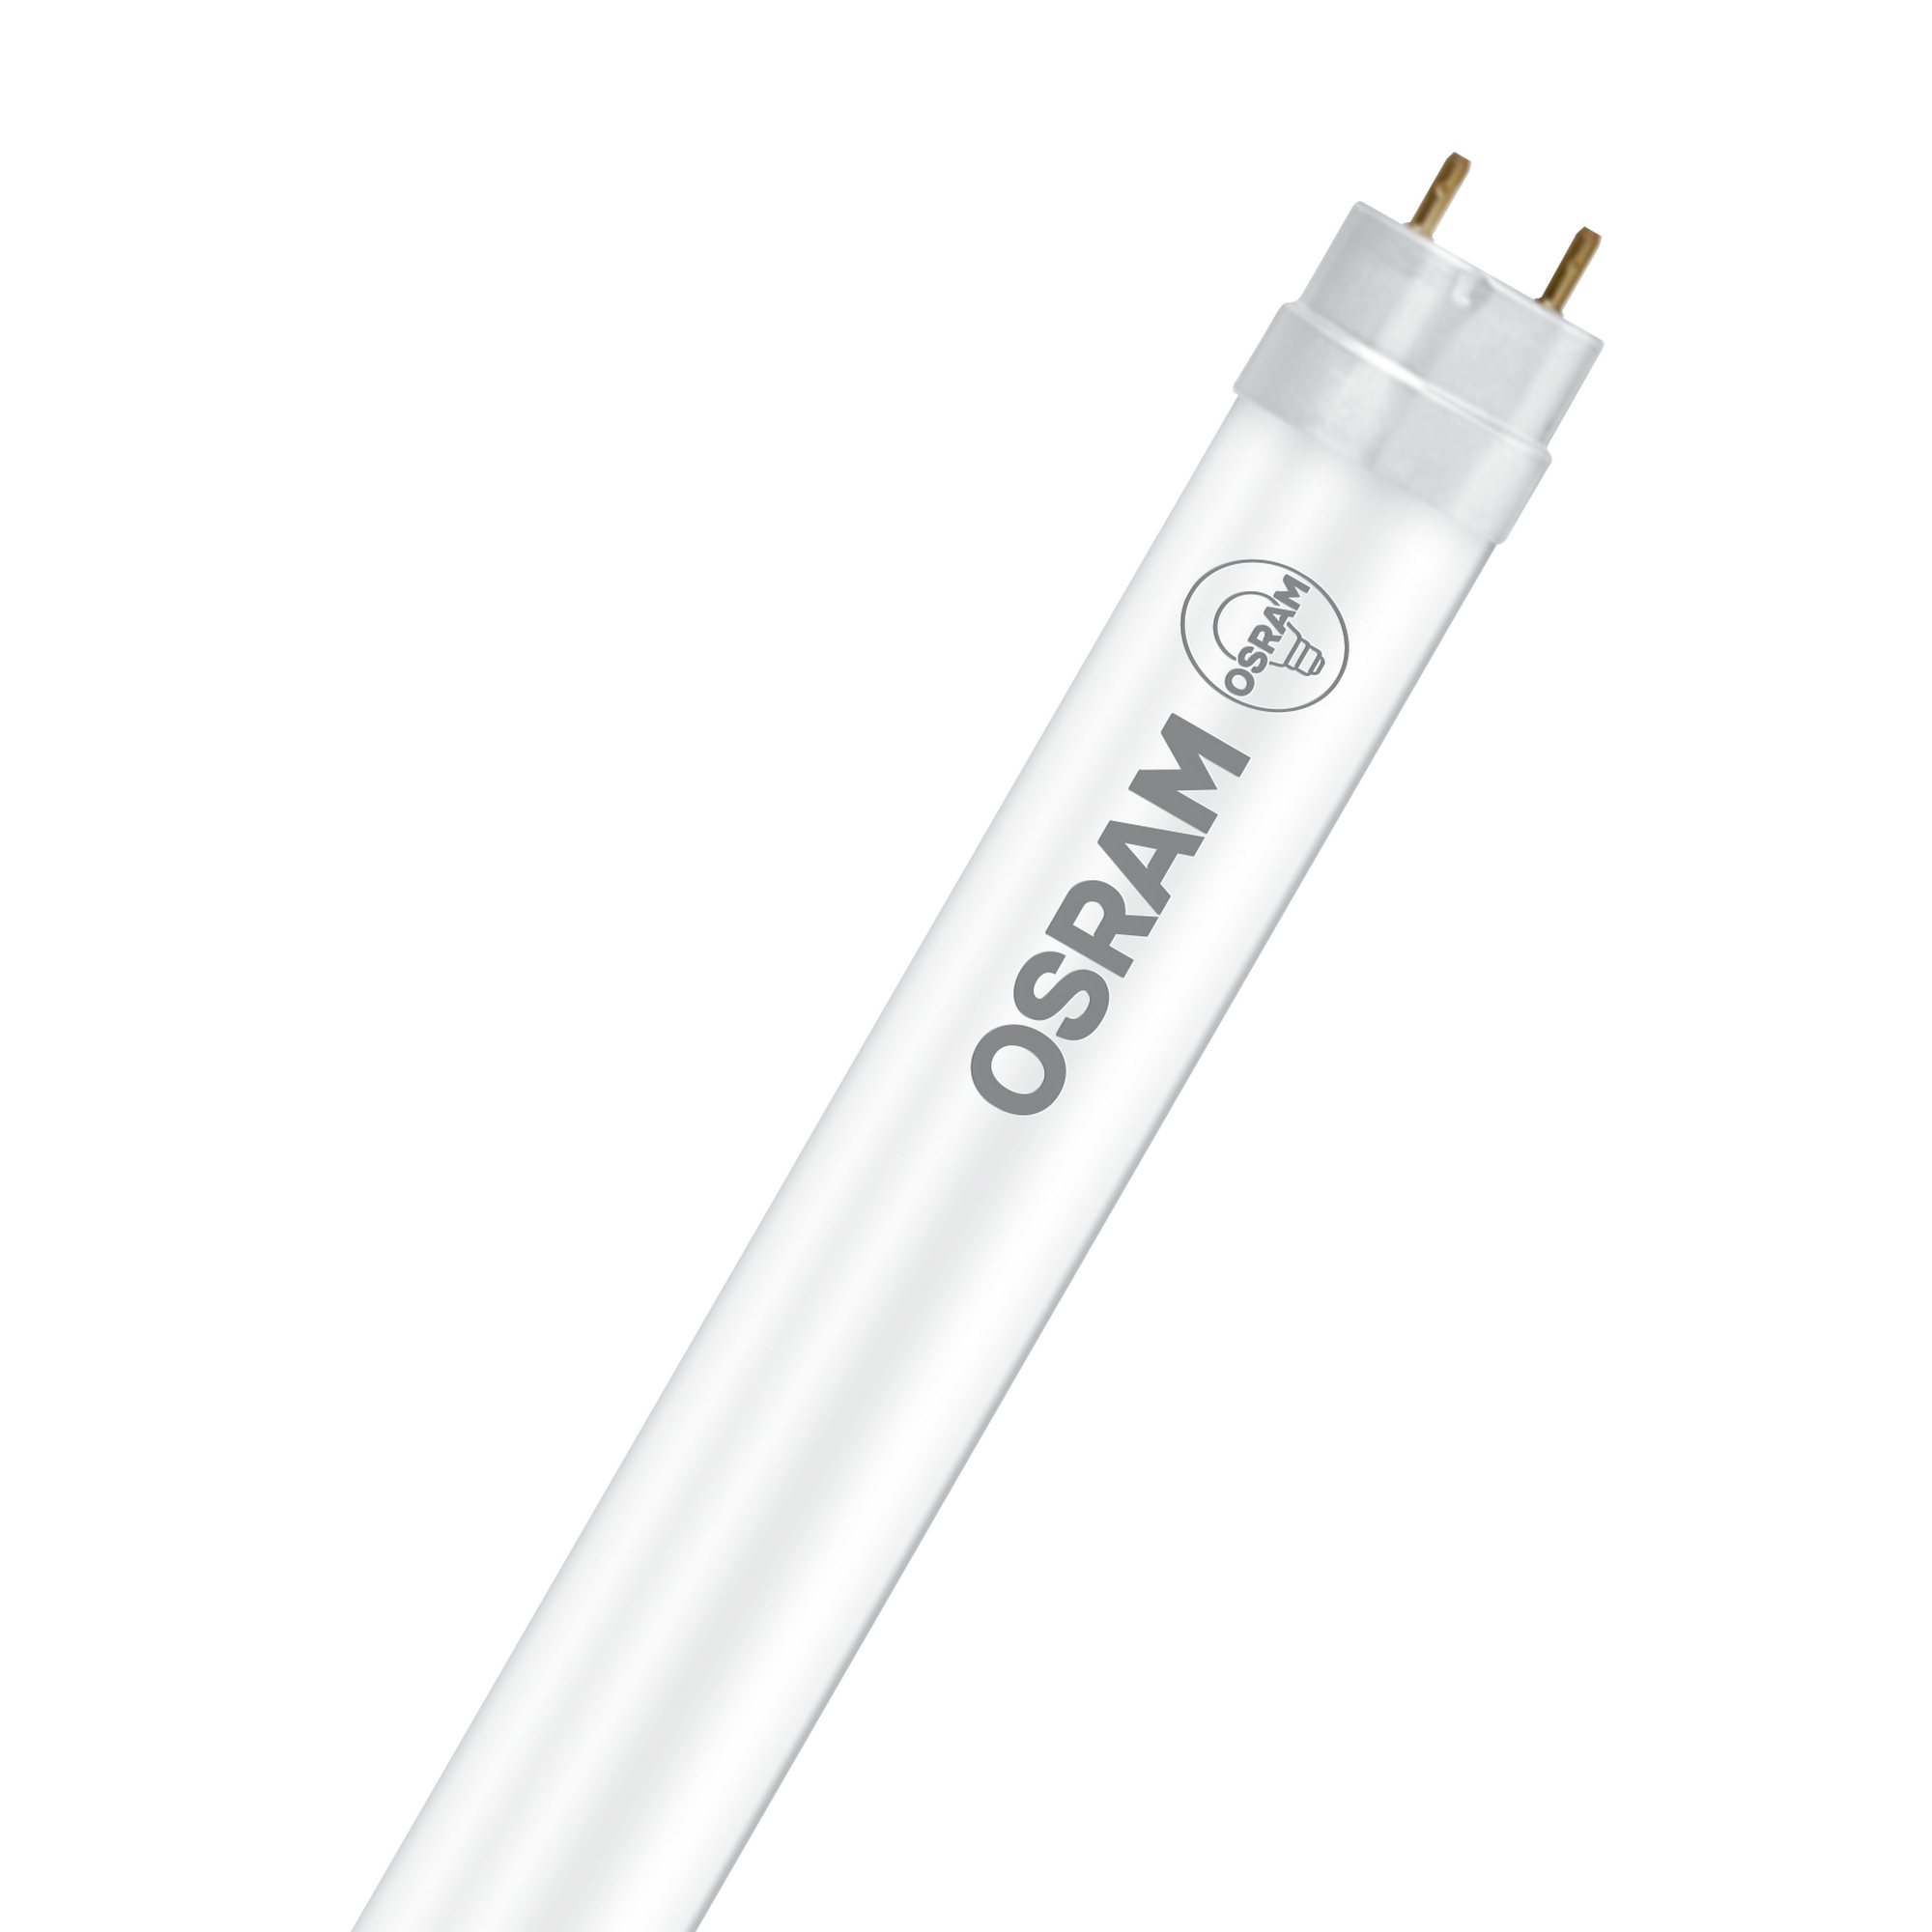 Osram LED-Röhre ‚Substitube‘ 900 lm 43,8 x 2,67 cm